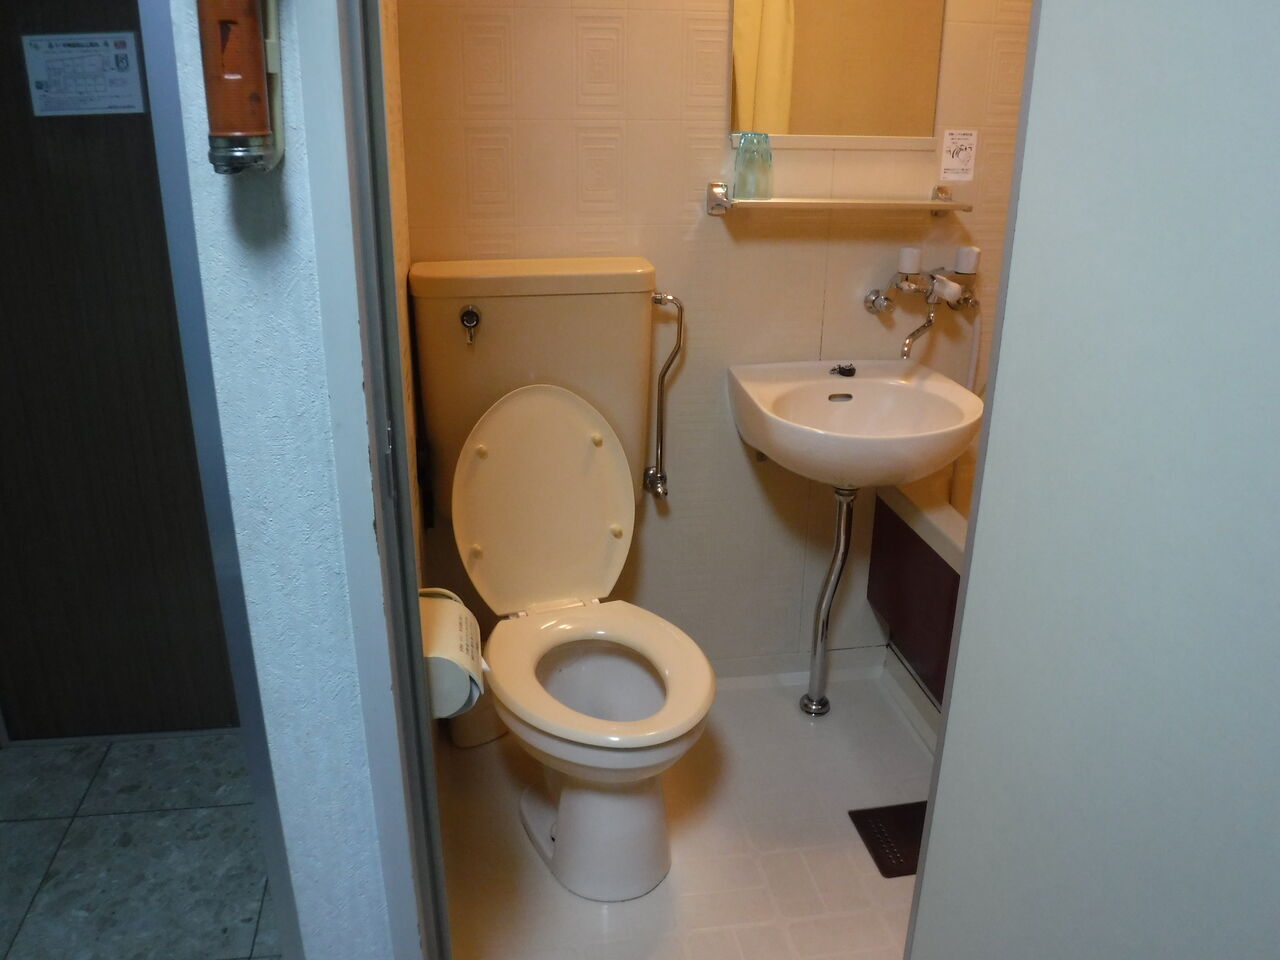 ユニットバスで見かけるトイレ器具 Toyoの旅行とトイレ調査日記